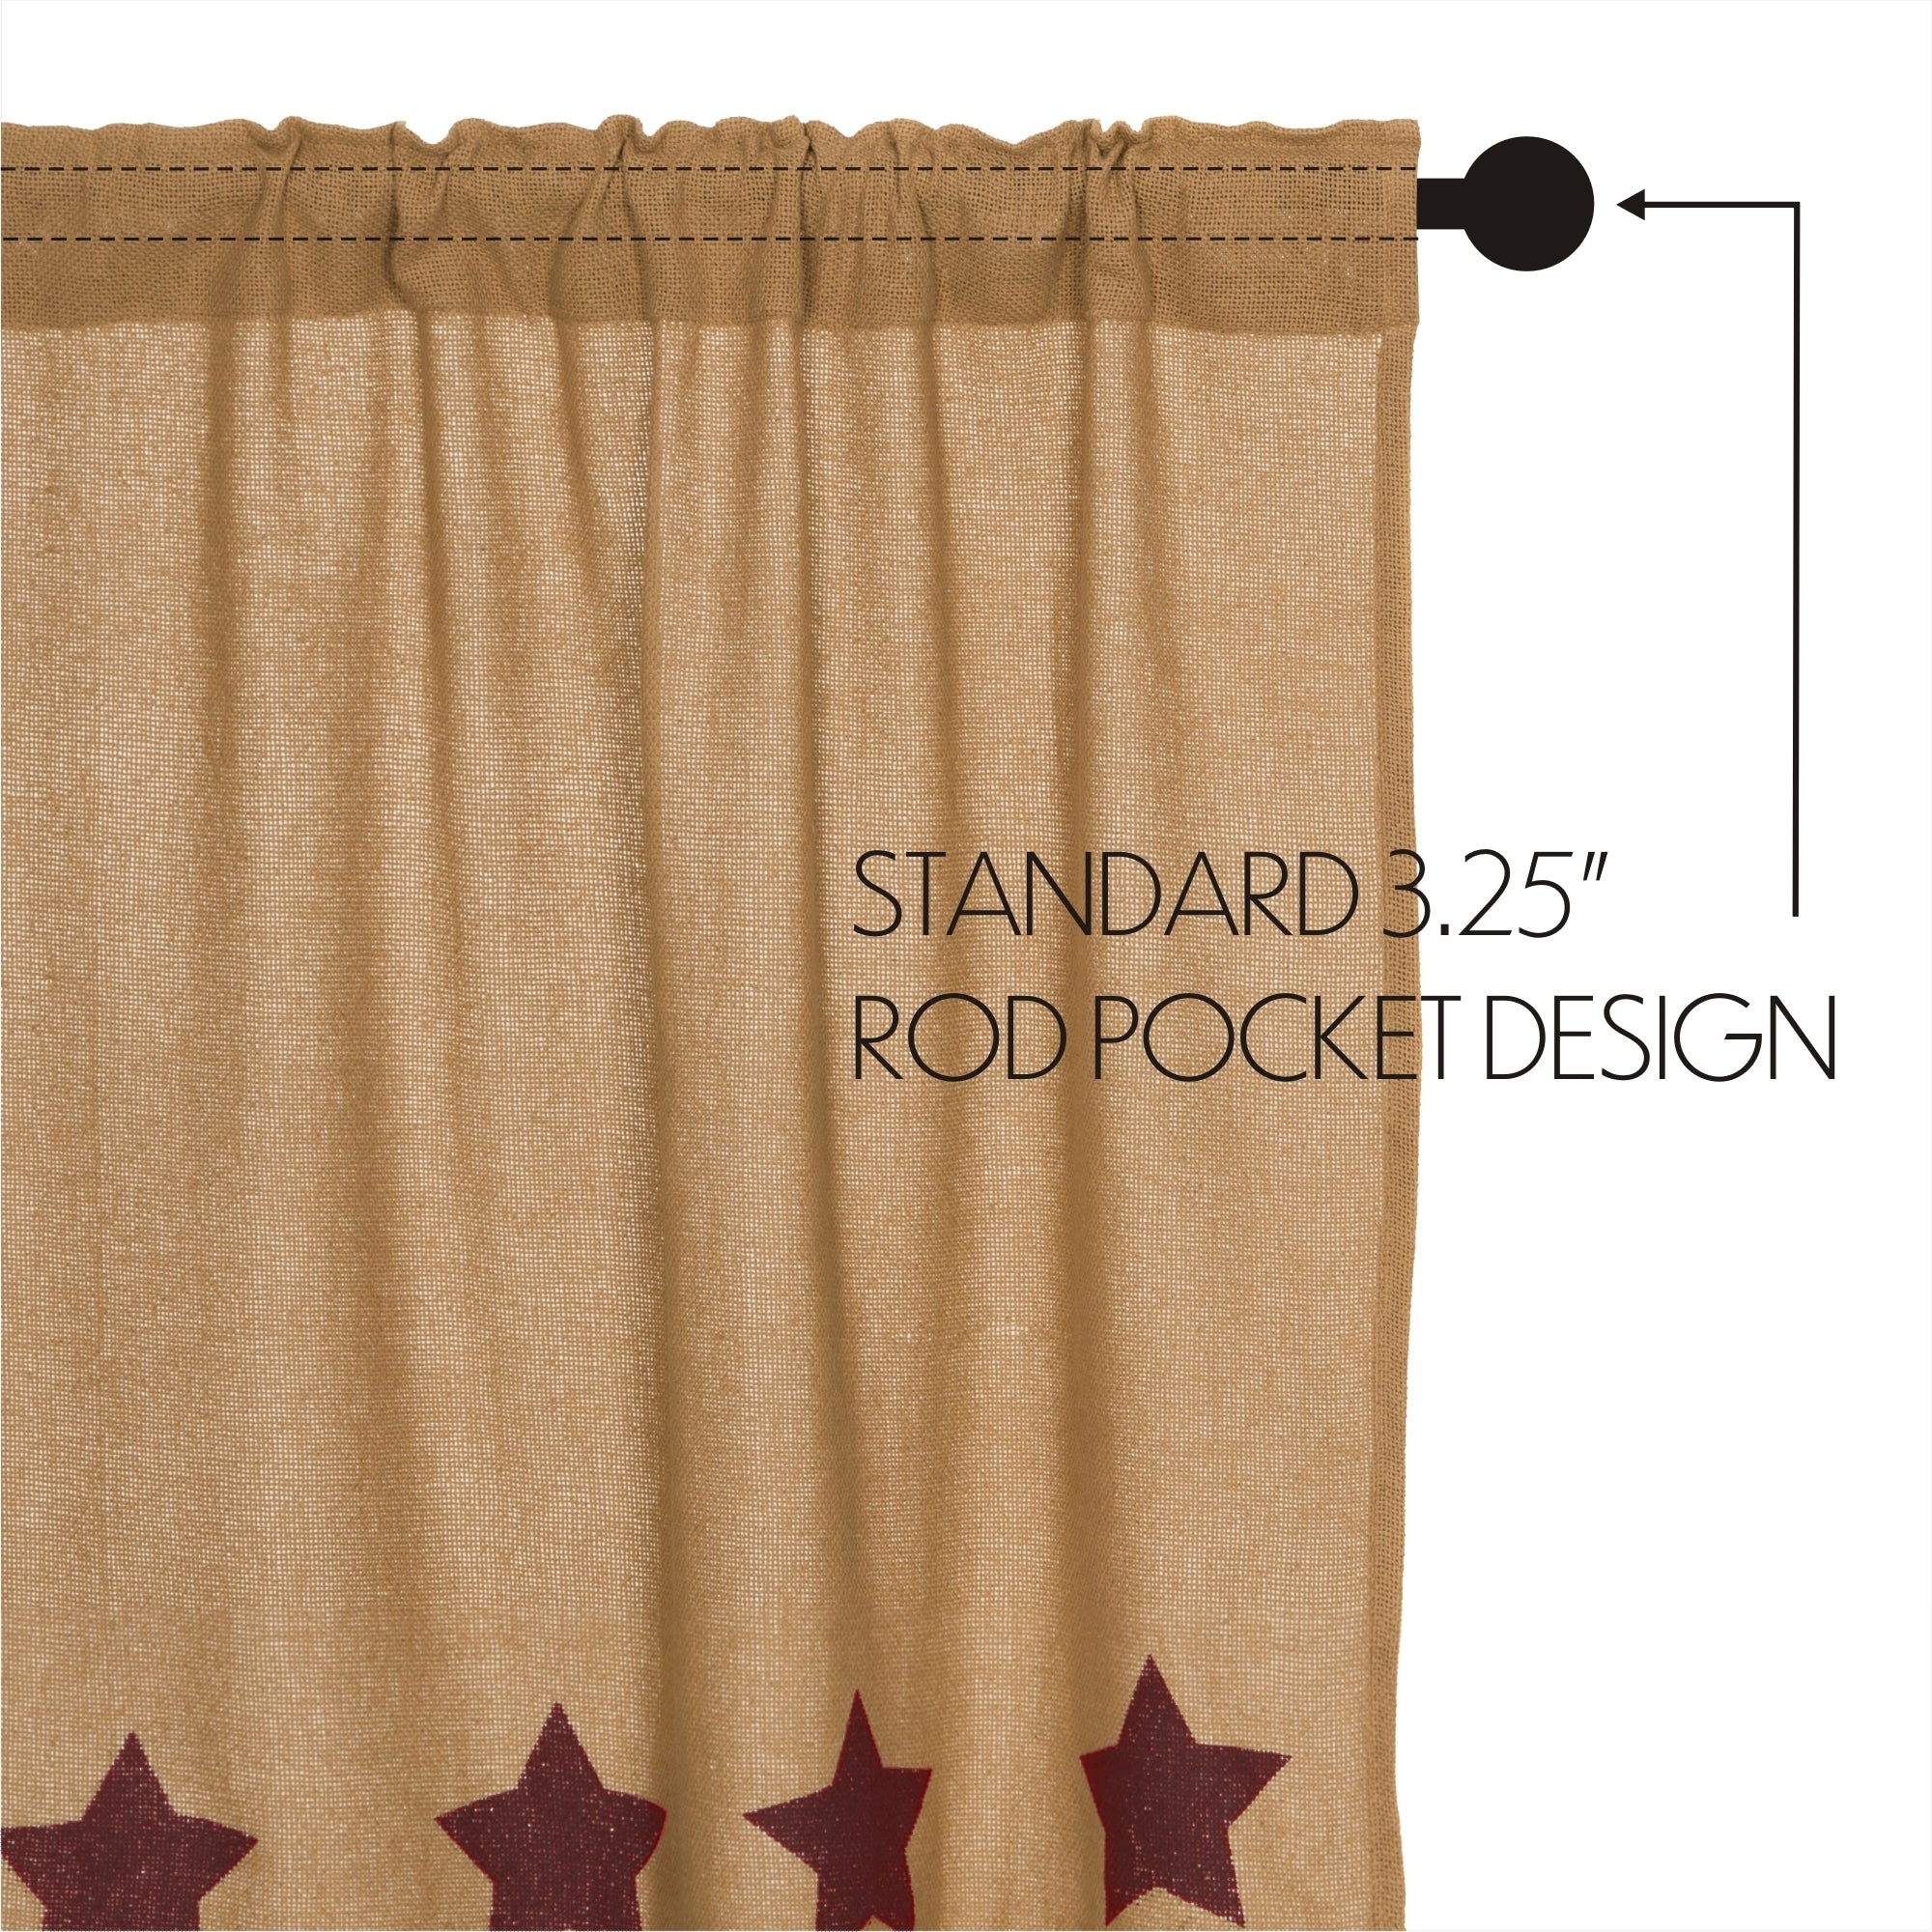 Burlap w/Burgundy Stencil Stars Tier Curtain Set of 2 L36xW36